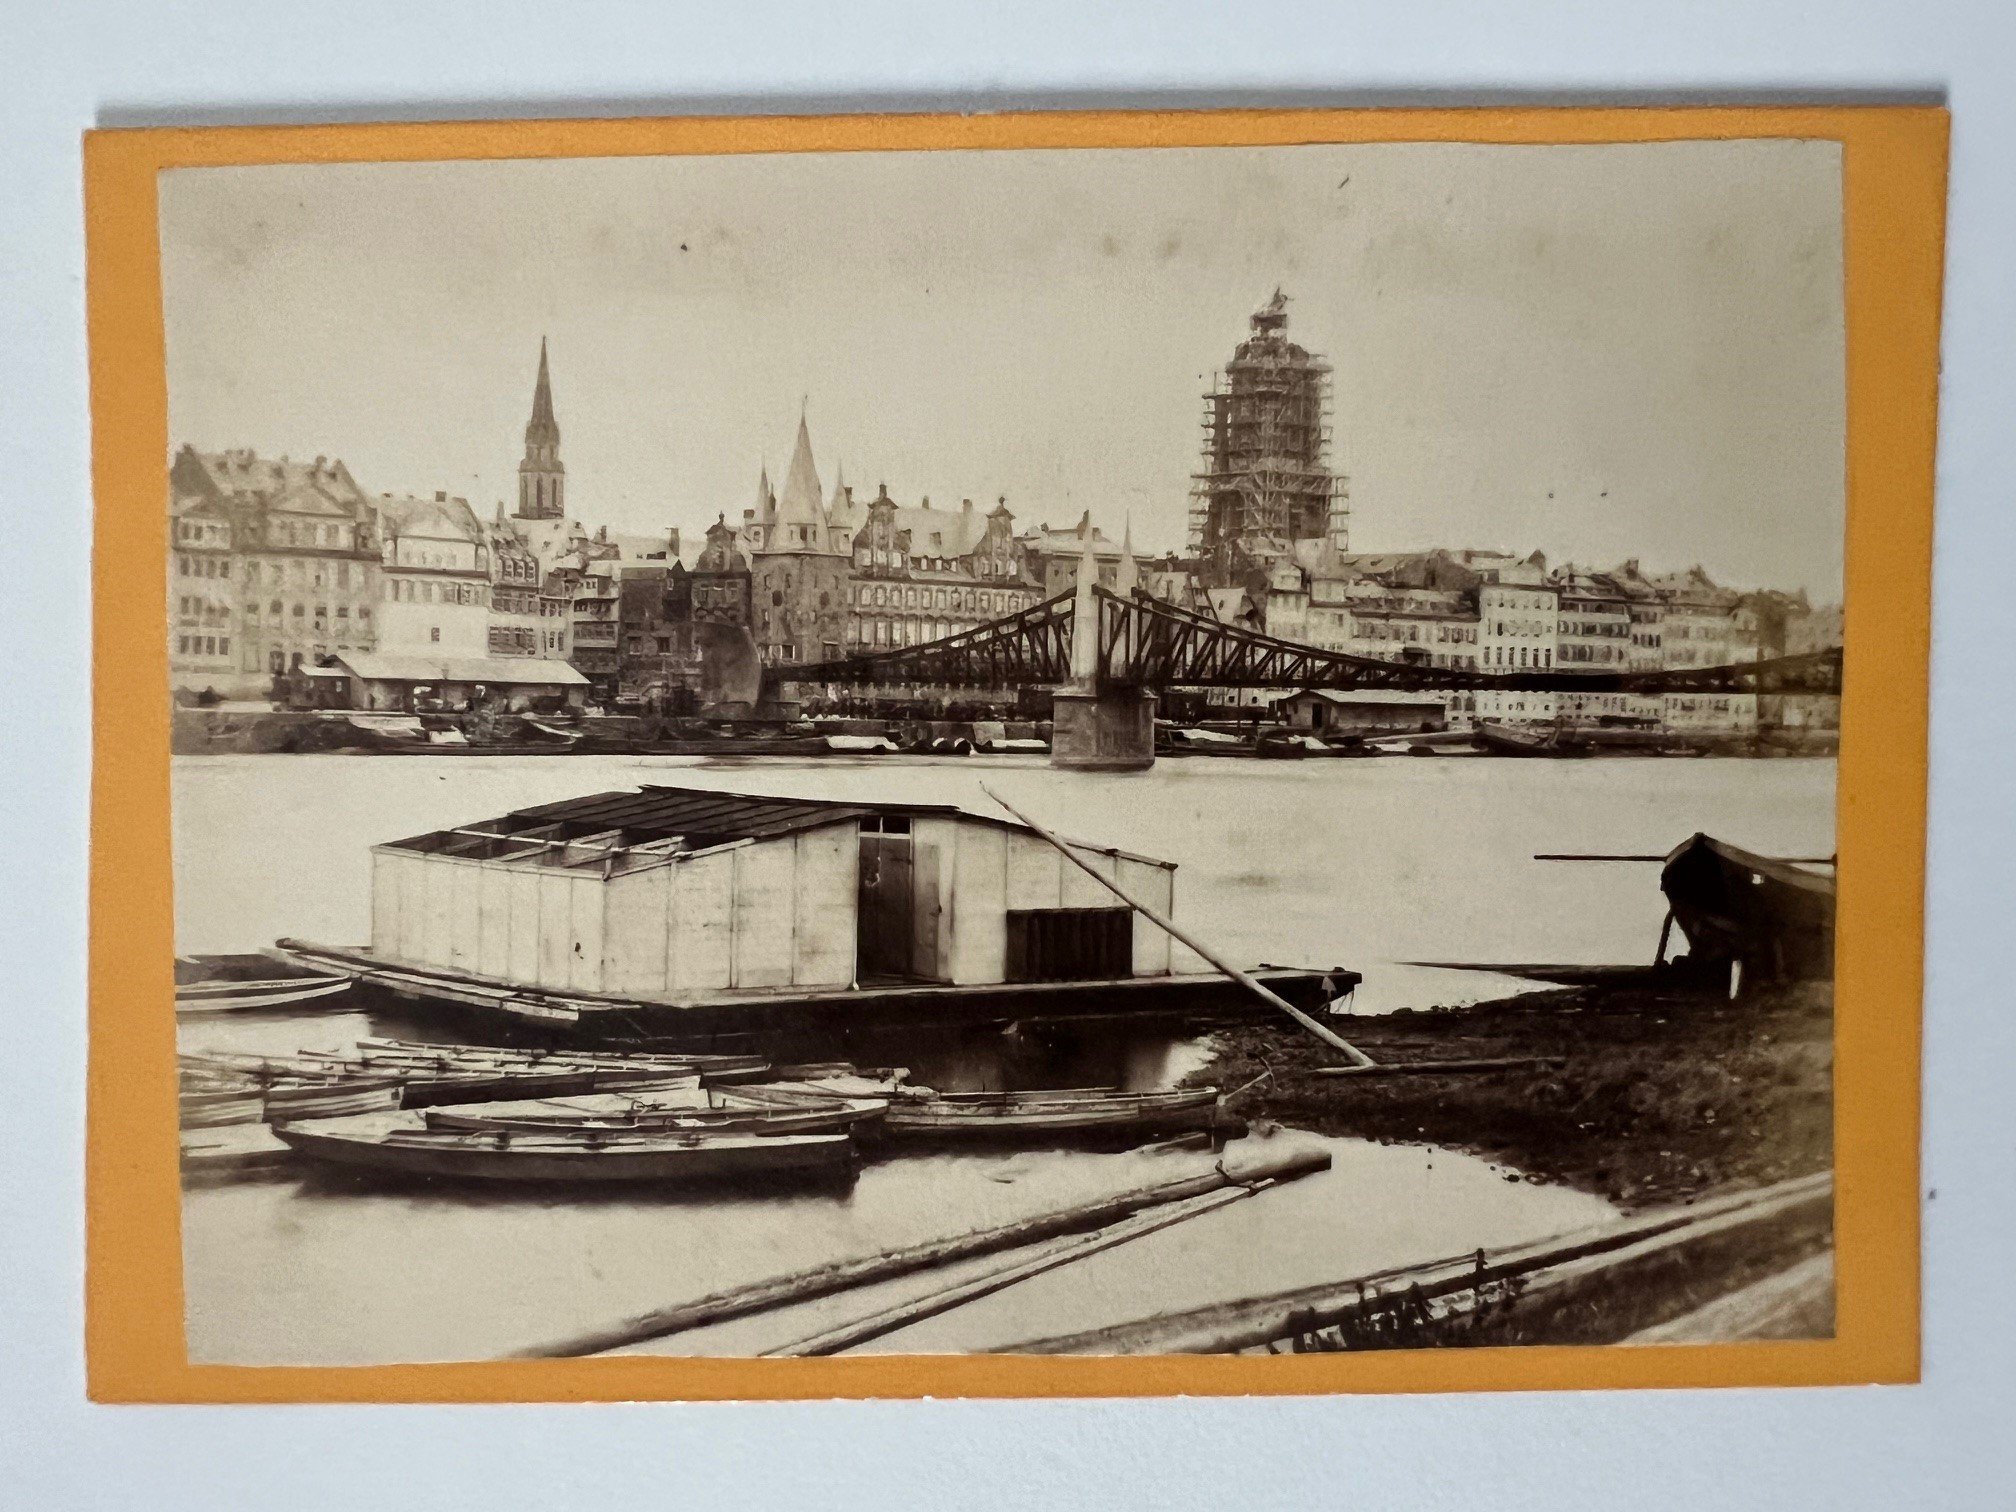 CdV, Theodor Creifelds, Frankfurt, Nr. 403, Panorama von Frankfurt mit Steg, ca. 1872. (Taunus-Rhein-Main - Regionalgeschichtliche Sammlung Dr. Stefan Naas CC BY-NC-SA)